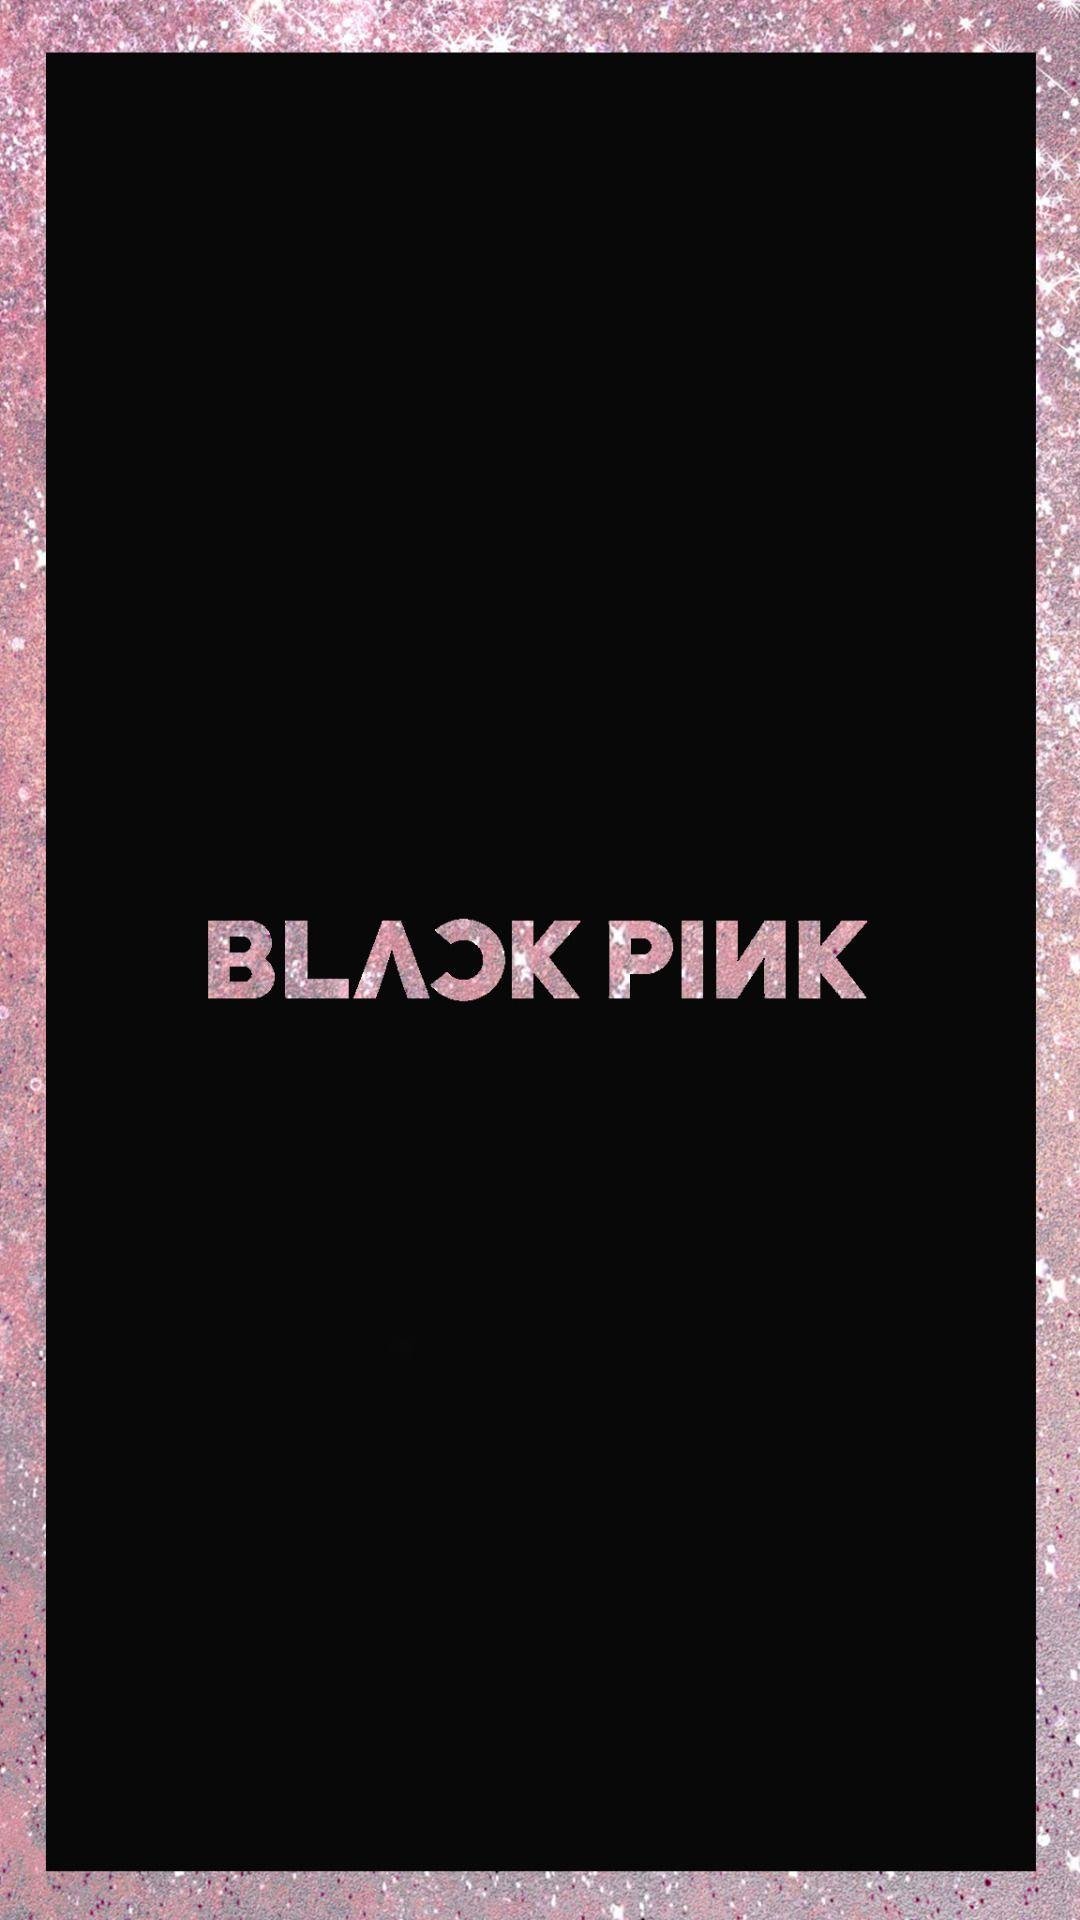 Blackpink Logo Black Background Wallpaper Download | MobCup